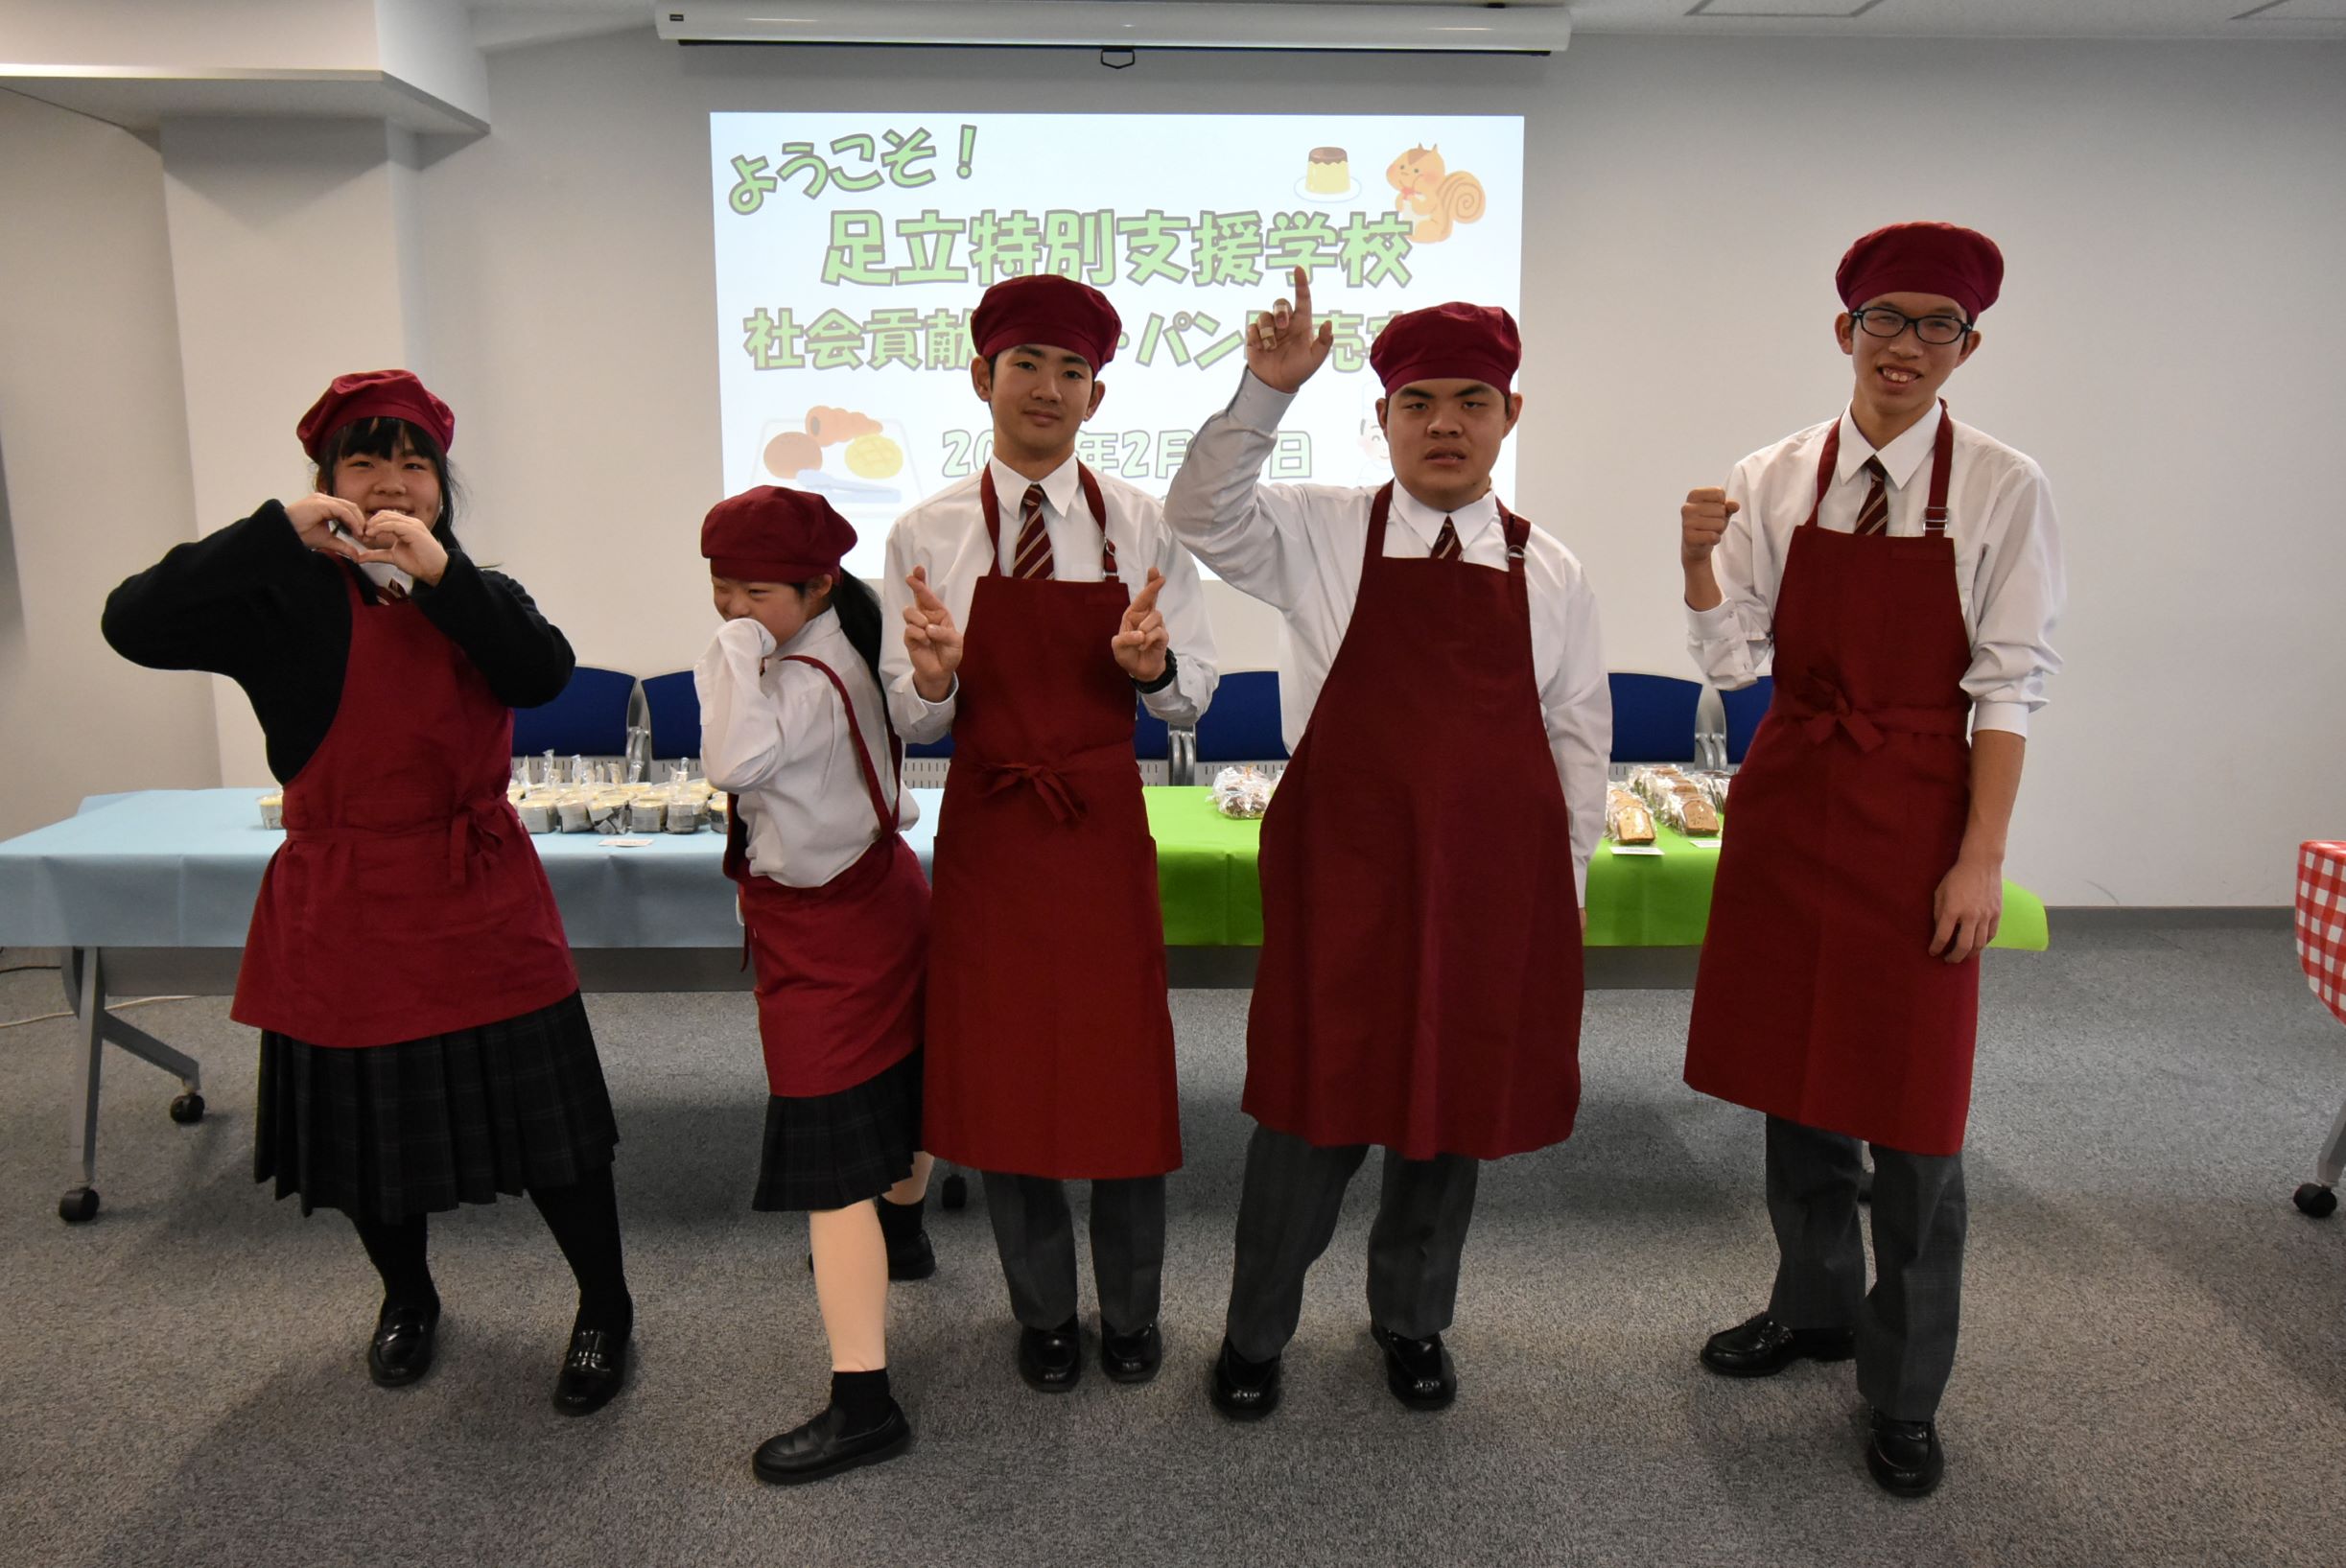 【社会貢献活動】東京都立足立特別支援学校によるパンの実習販売を実施しました！